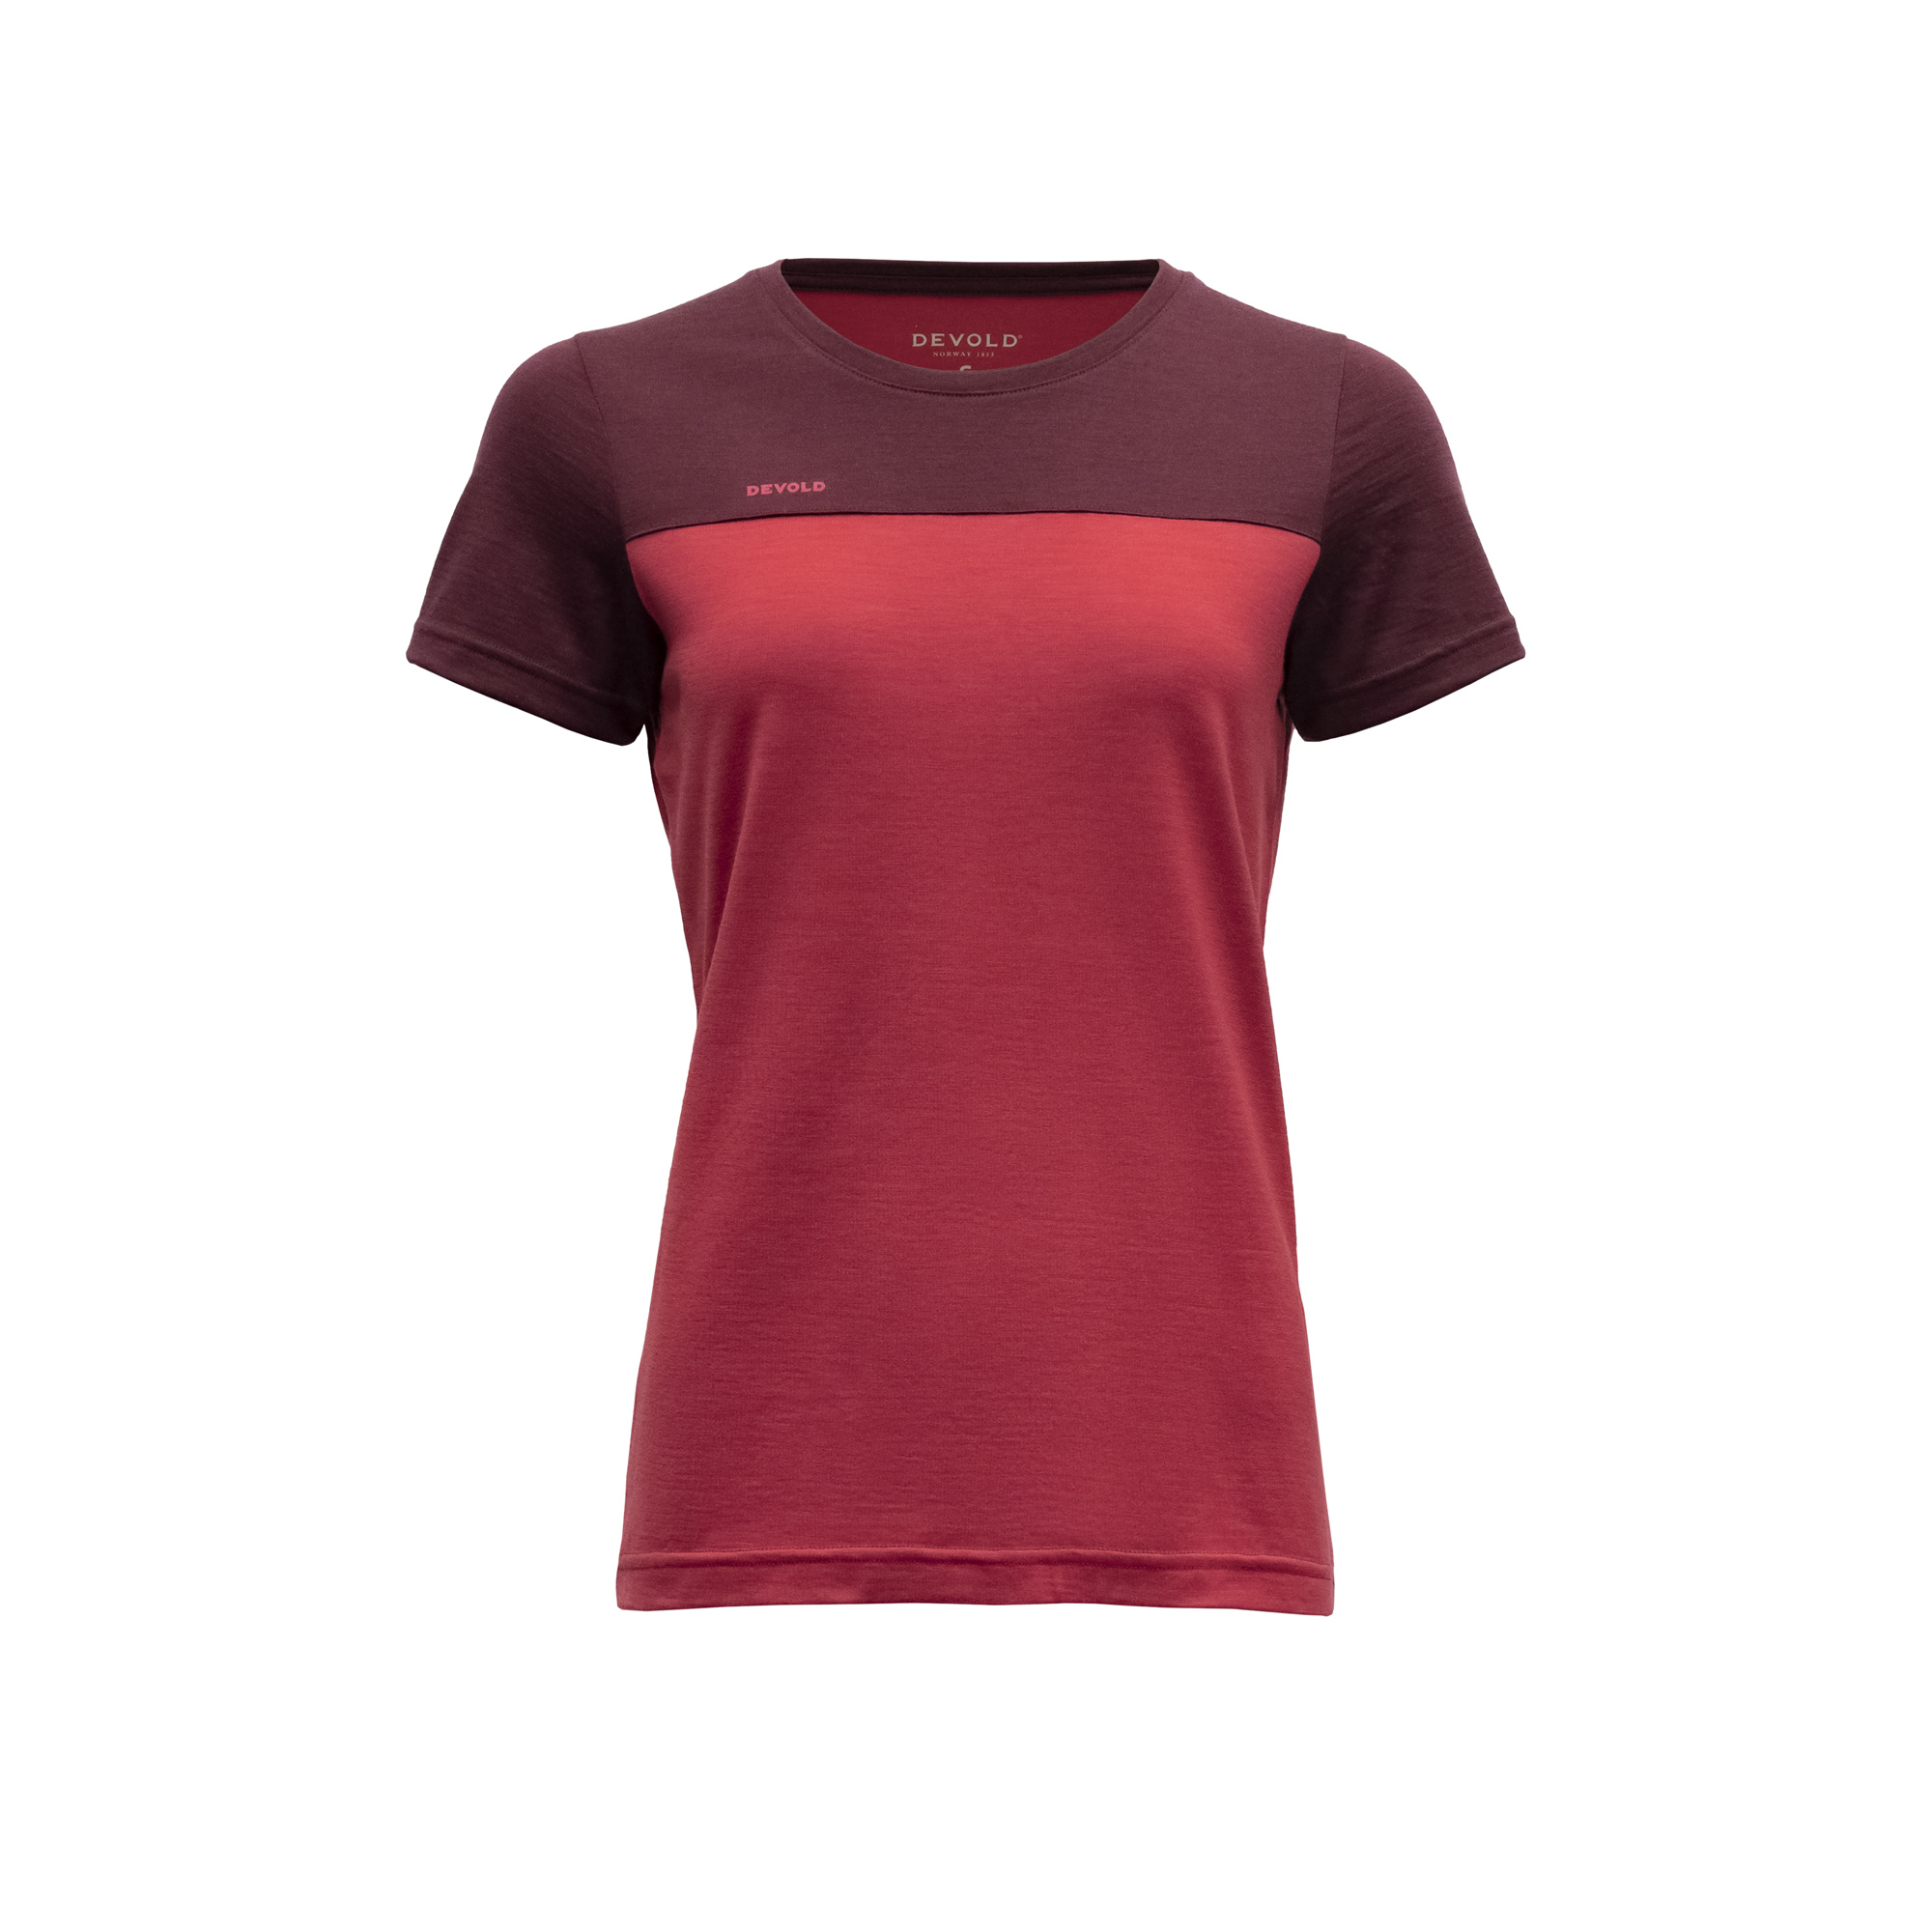 Devold dámské triko s krátkým rukávem Norang Woman Tee Barva: Port/Beauty, Velikost: L